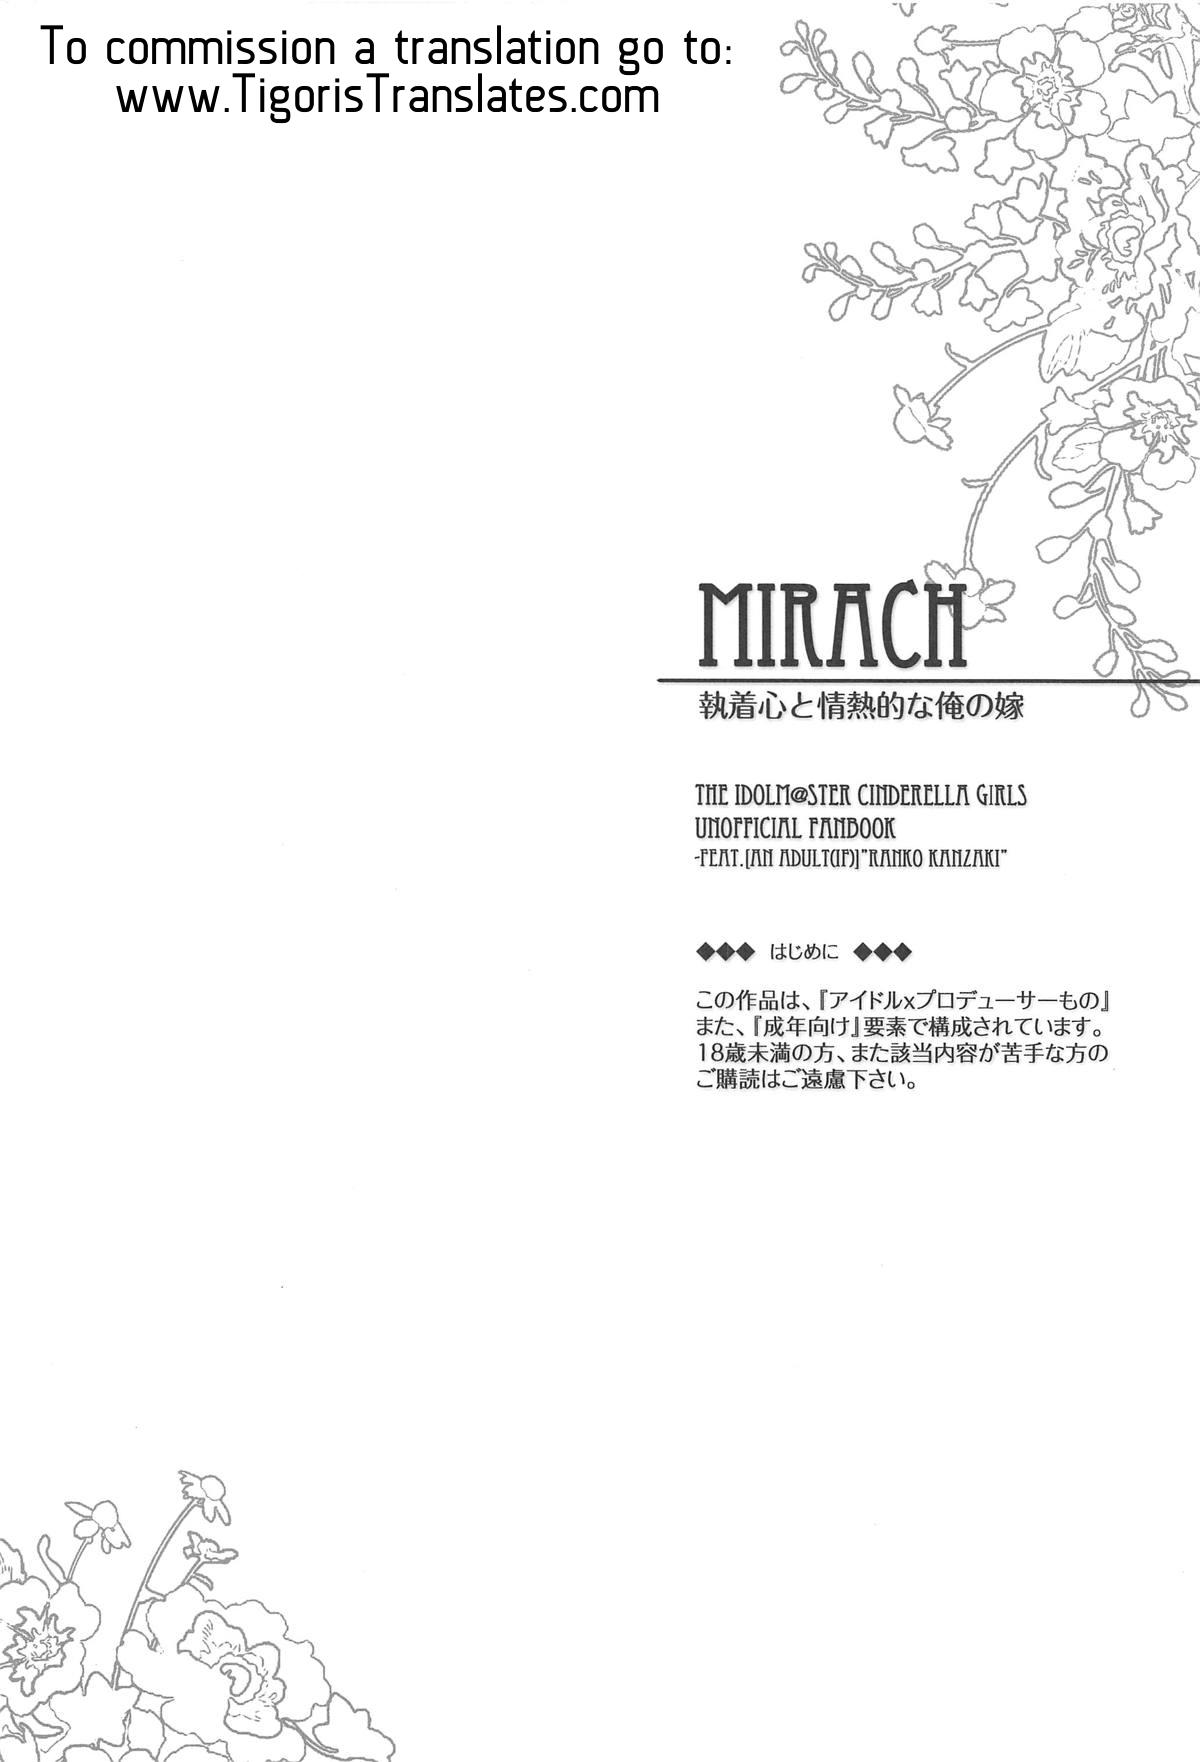 MIRACH 2